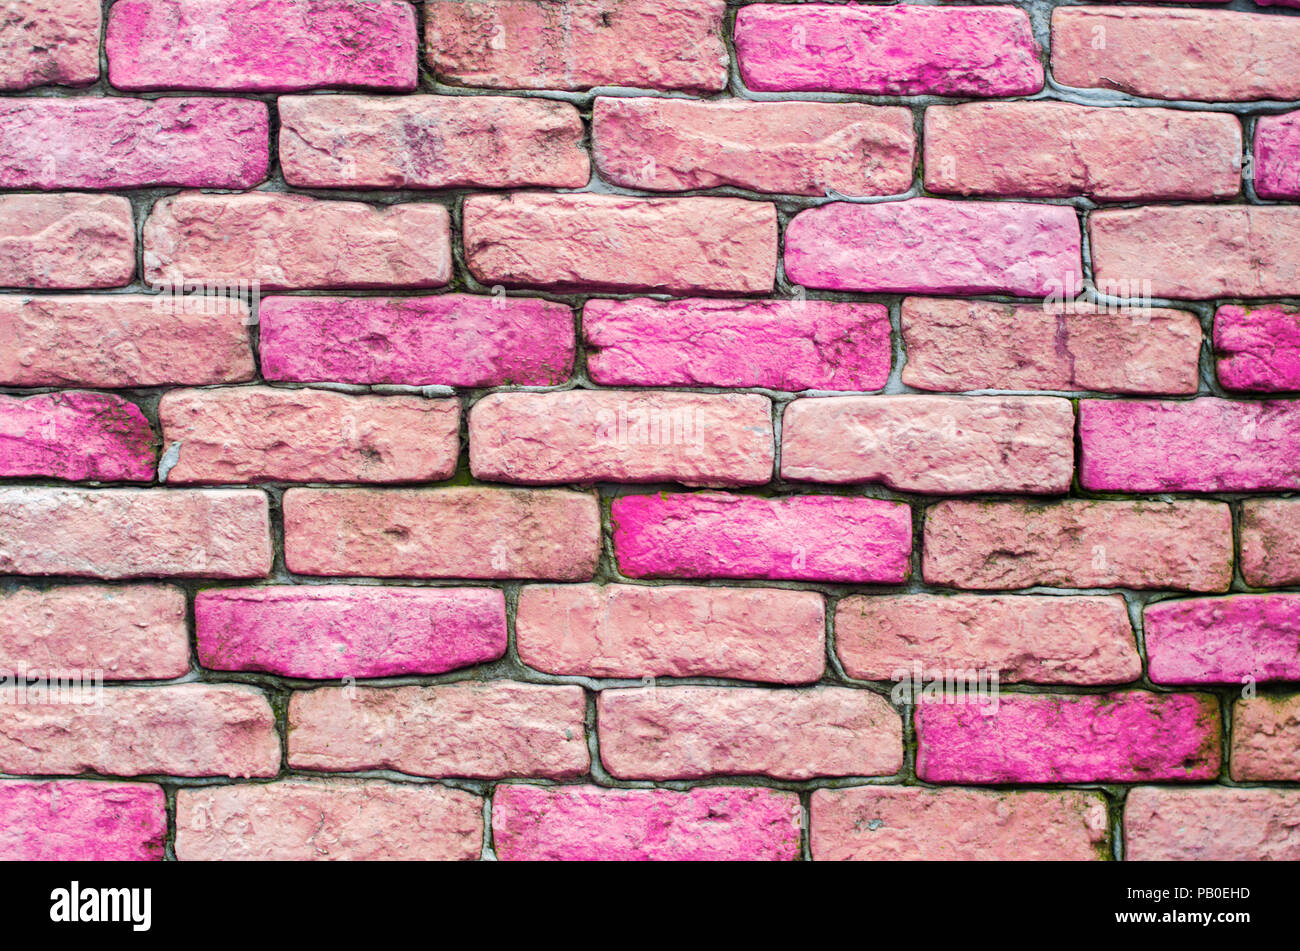 Với Ảnh và hình ảnh chất lượng cao tường gạch màu hồng, bạn sẽ có những bức ảnh hoàn hảo nhất để trang trí cho căn nhà của mình. Với các hình ảnh hi-res đẹp mắt này, bạn sẽ luôn tìm được những điểm nhấn đặc biệt cho không gian sống của mình.